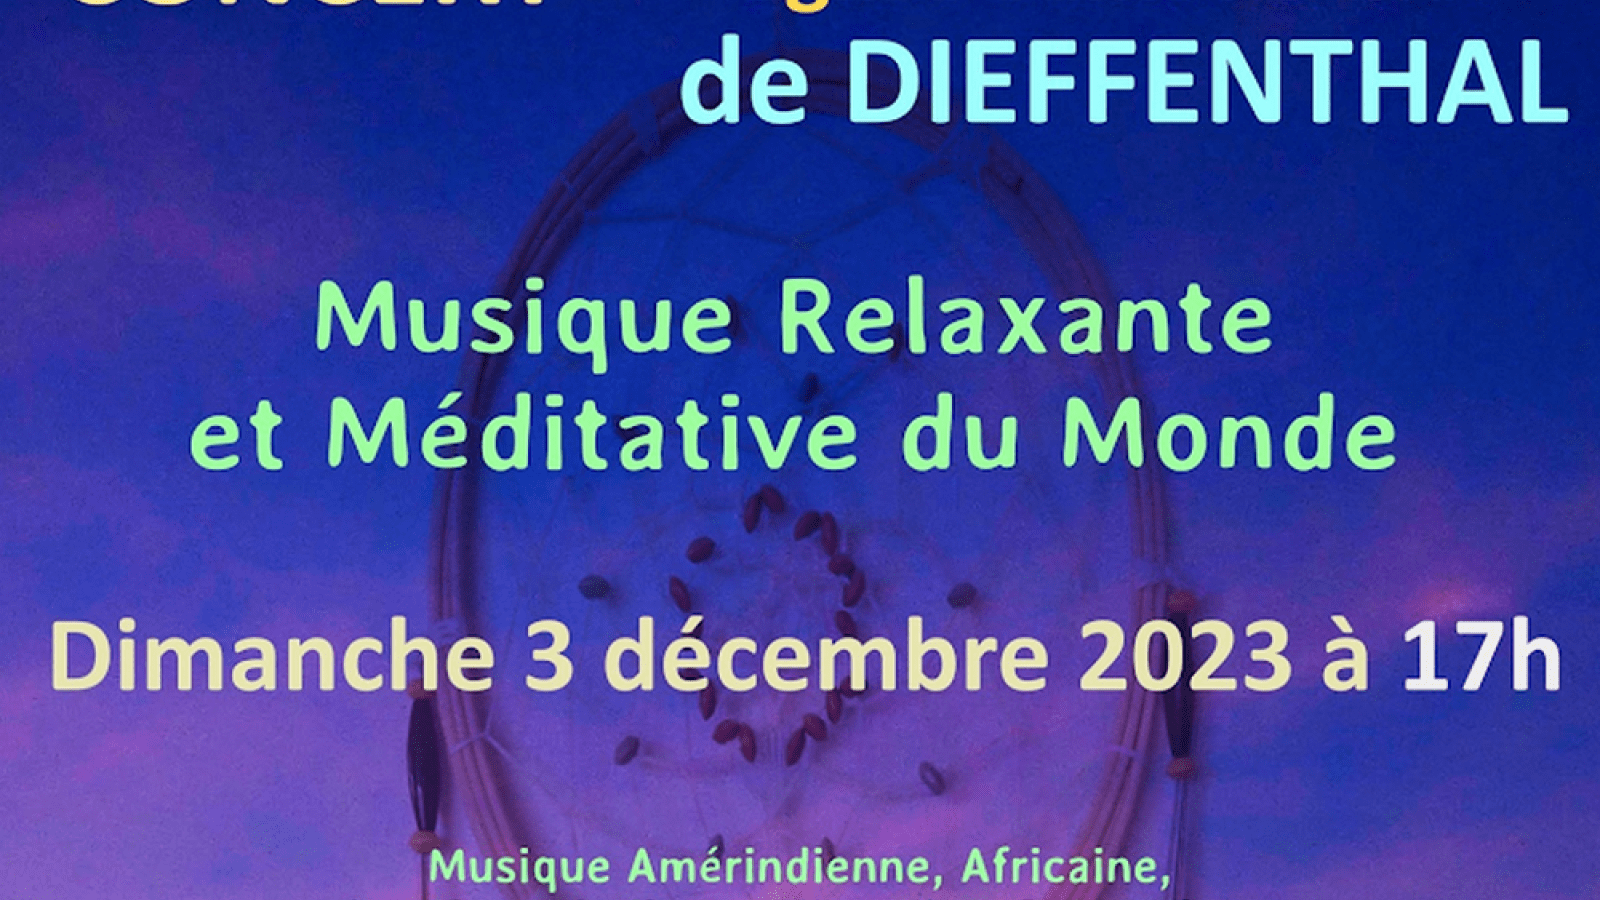 https://www.visit.alsace/wp-content/uploads/lei/pictures/222007451-concert-musique-relaxante-et-meditative-du-monde-1-1600x900.png